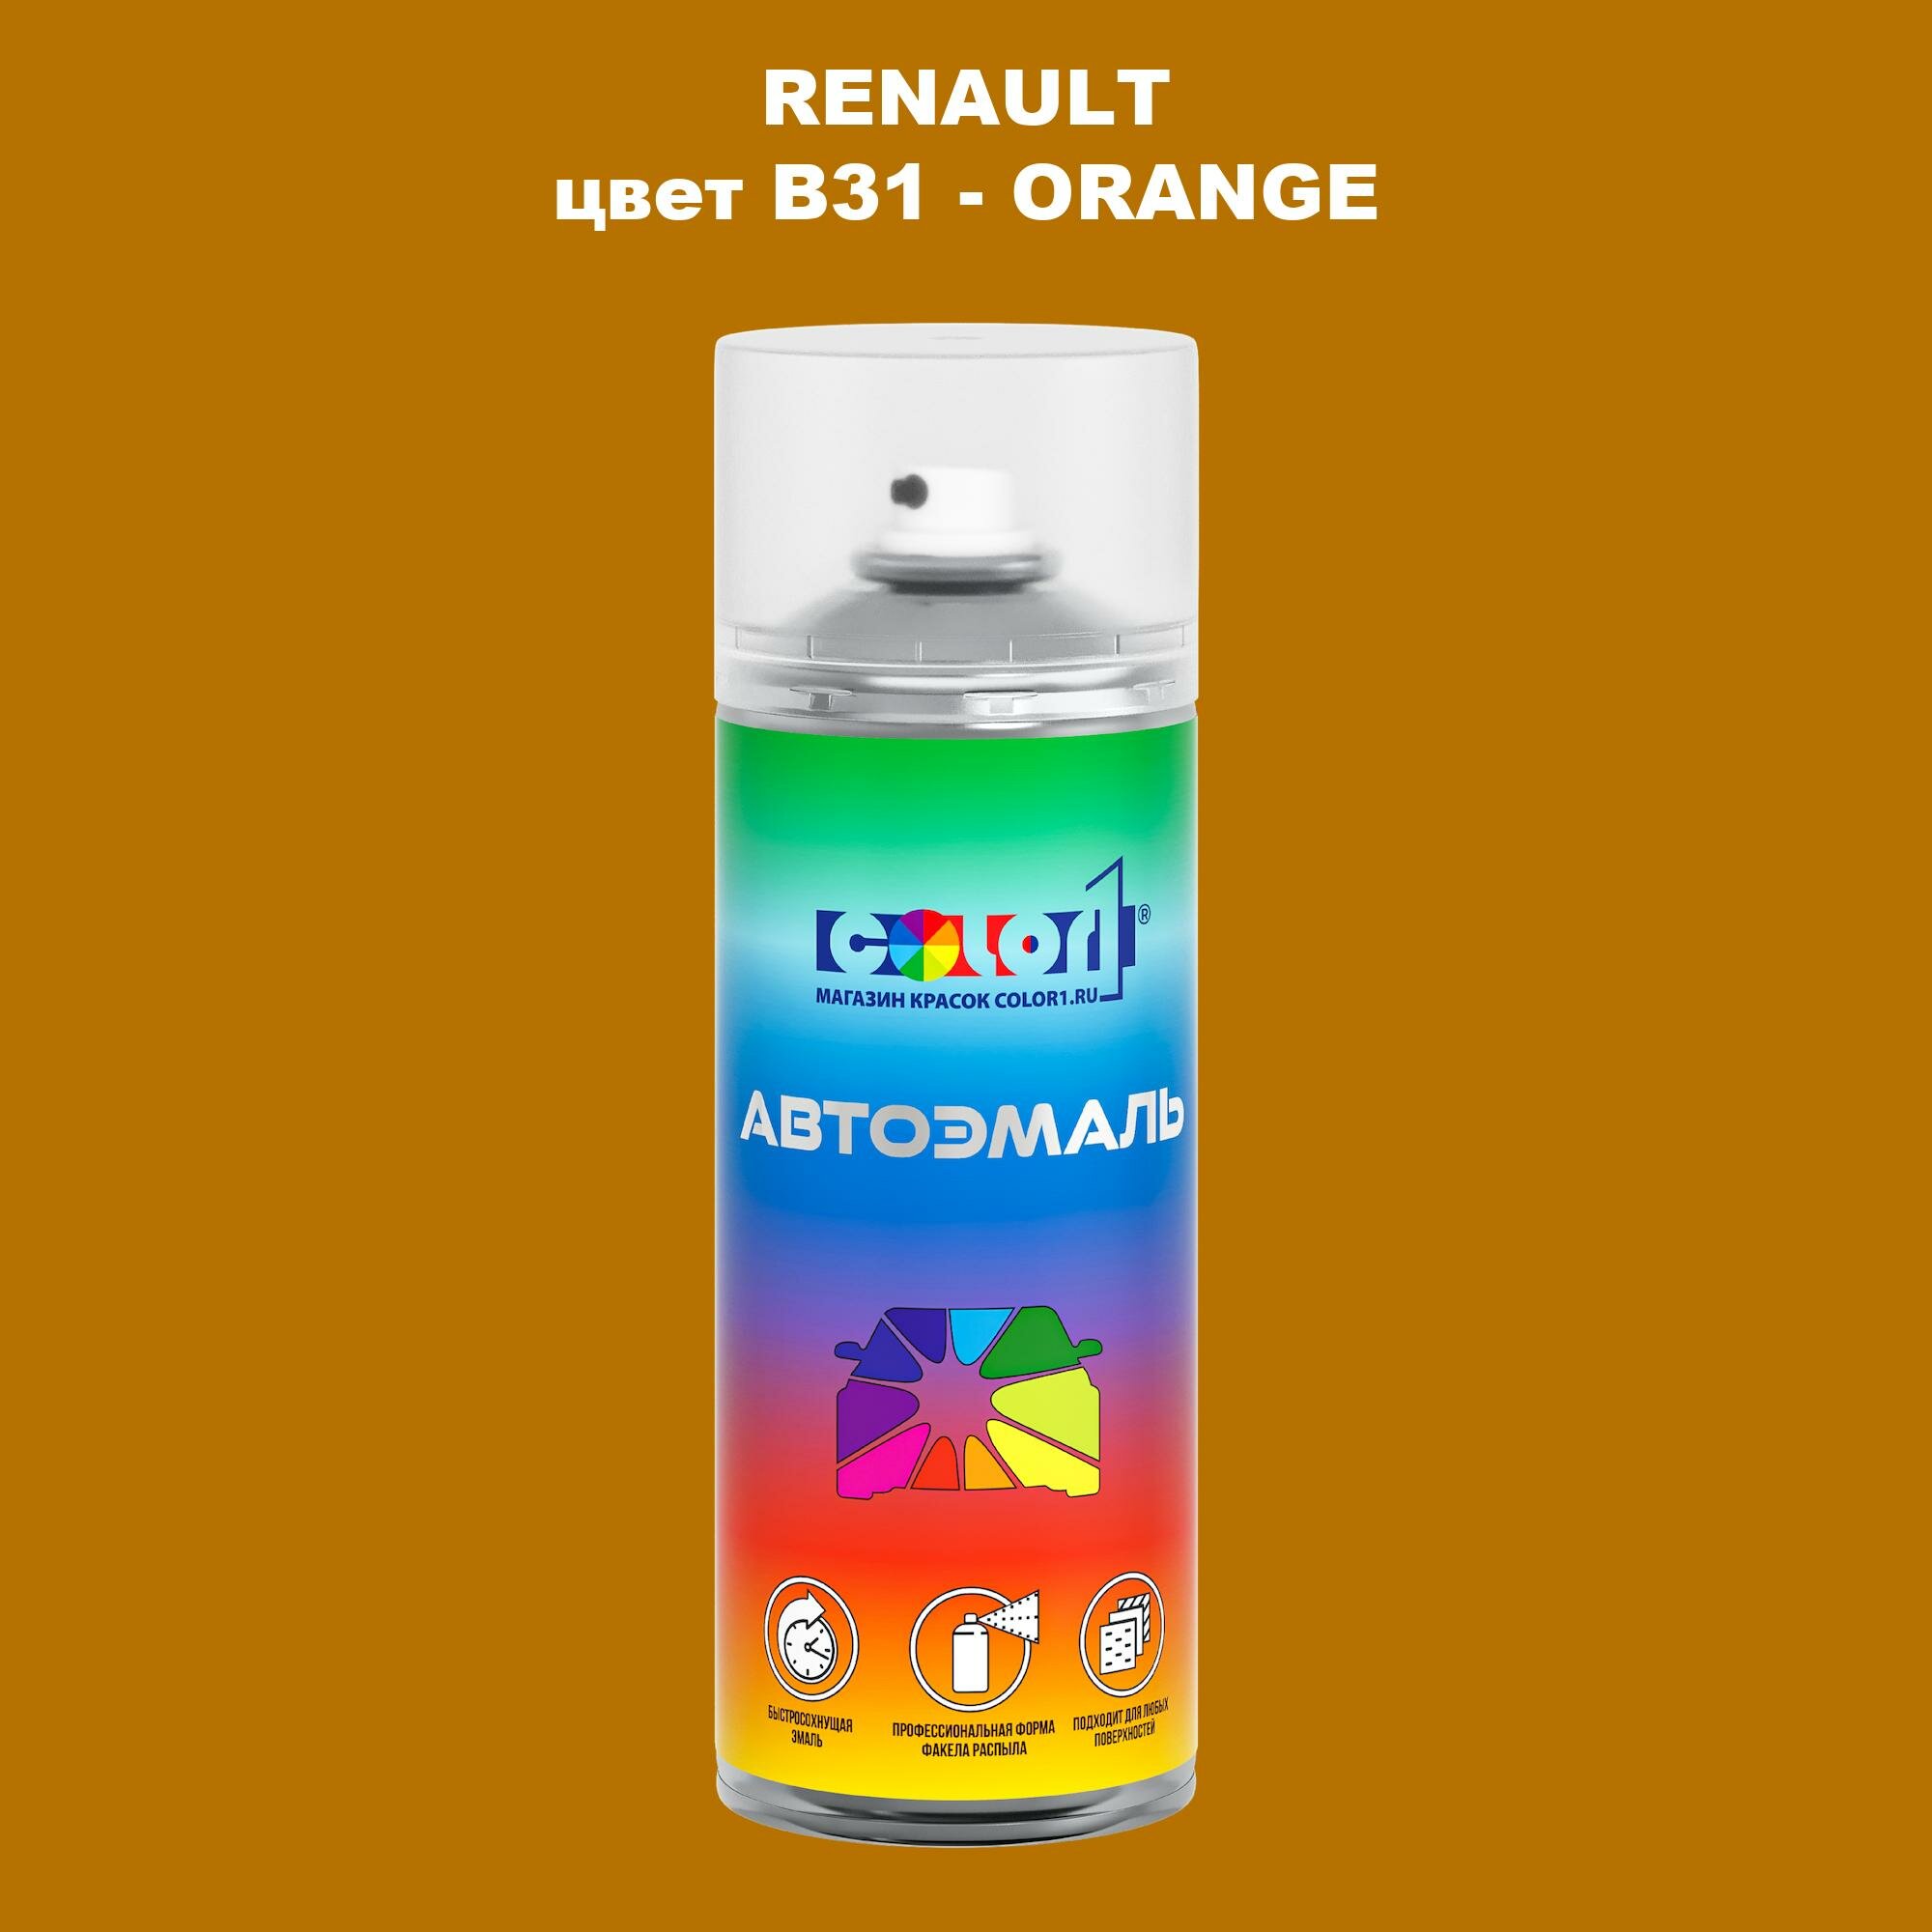 Аэрозольная краска COLOR1 для RENAULT, цвет B31 - ORANGE